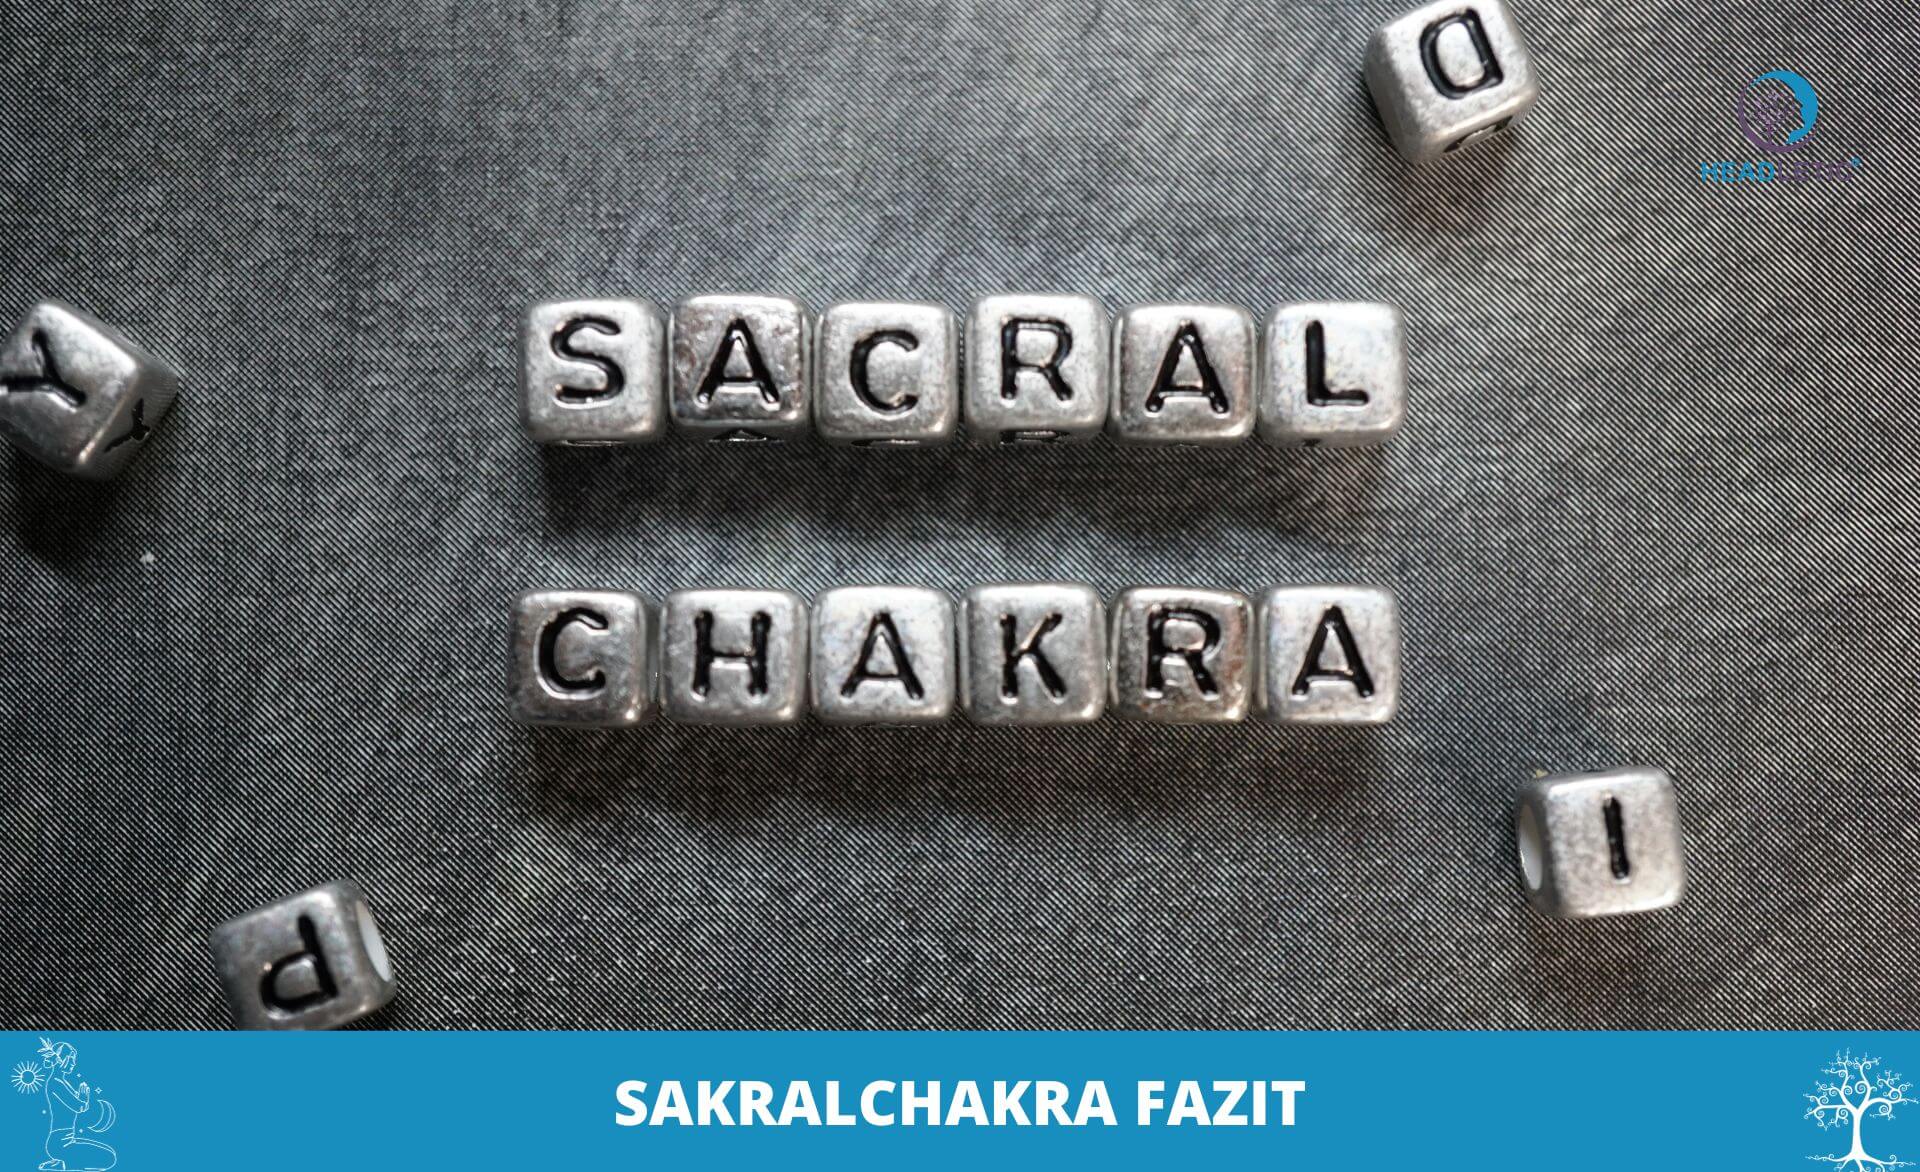 Die Sakralchakra-Meditation erforscht die lebendige Energie des Sakralchakras, auch Sakralchakra genannt. Diese Praxis fördert einen ausgeglichenen und harmonischen Energiefluss im Sakralbereich